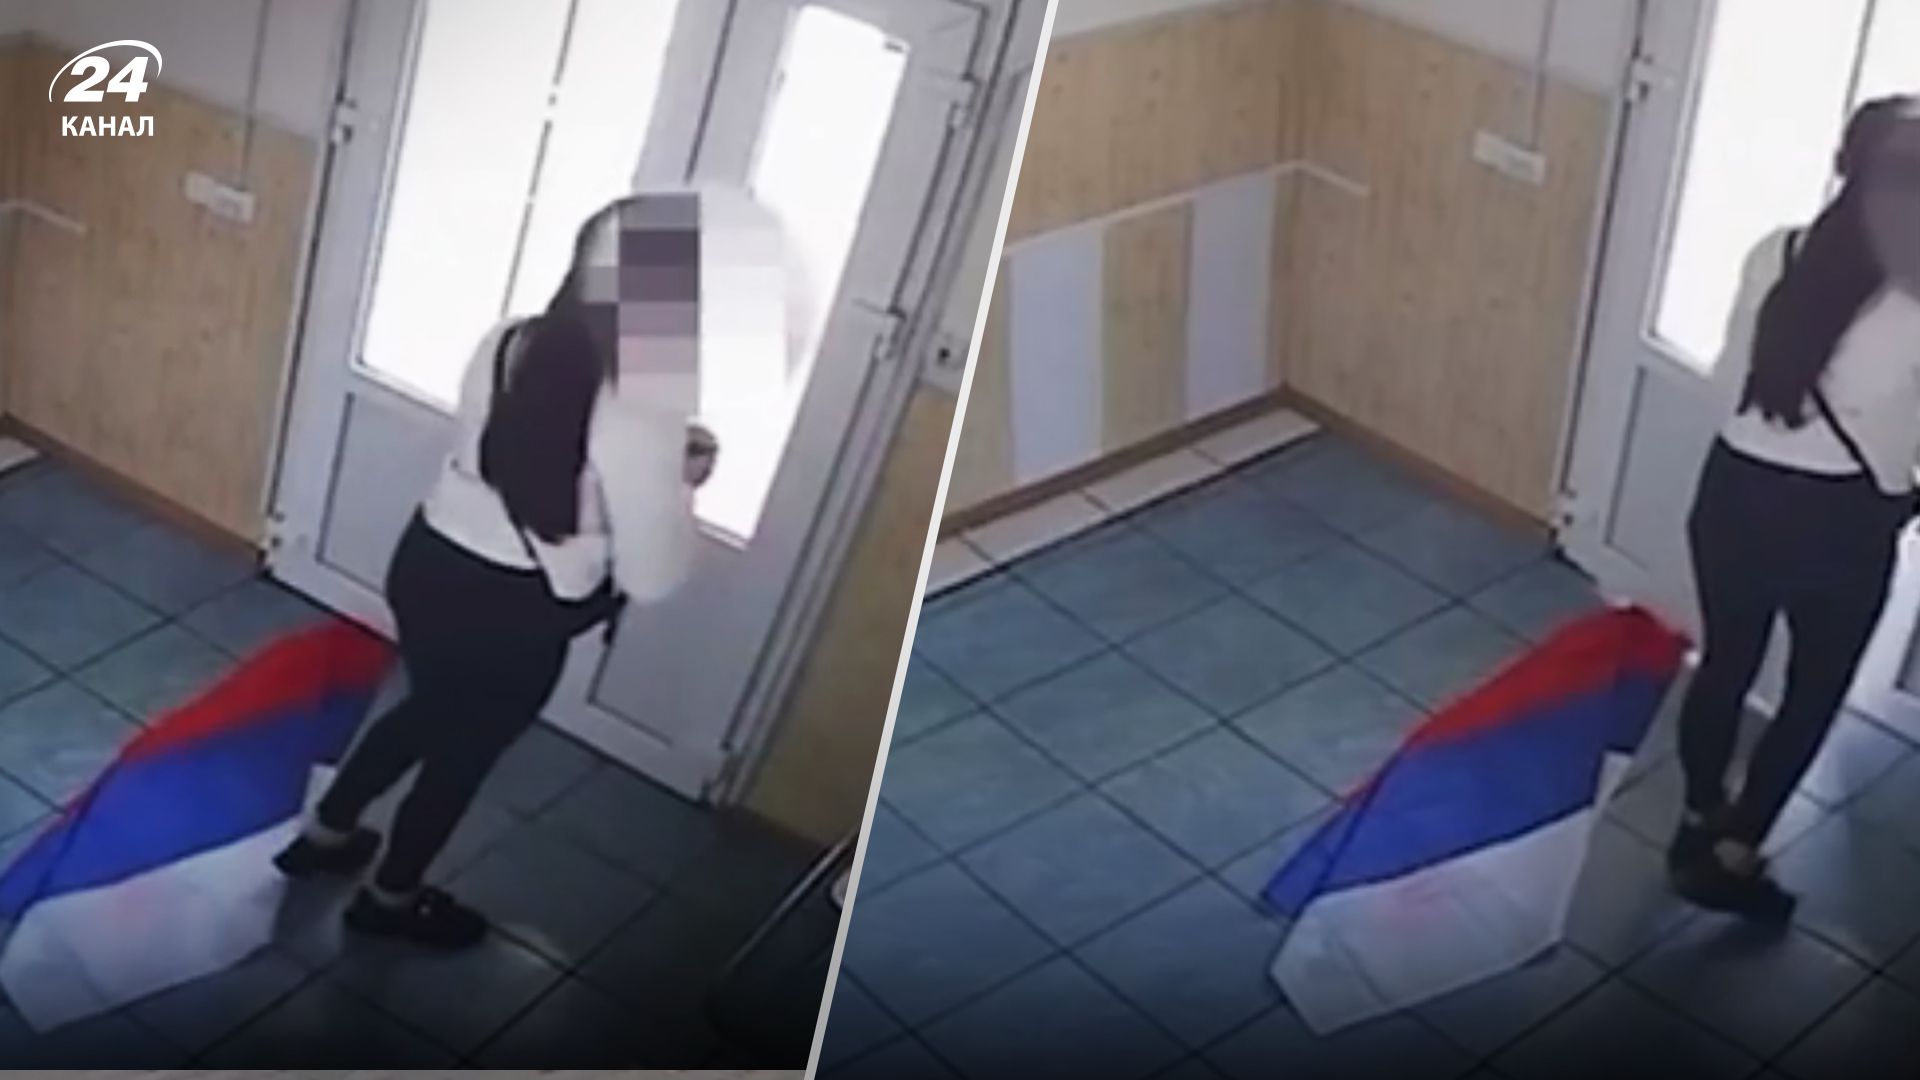 У Мелітополі дівчина зірвала російський прапор - відео й деталі від Івана Федорова